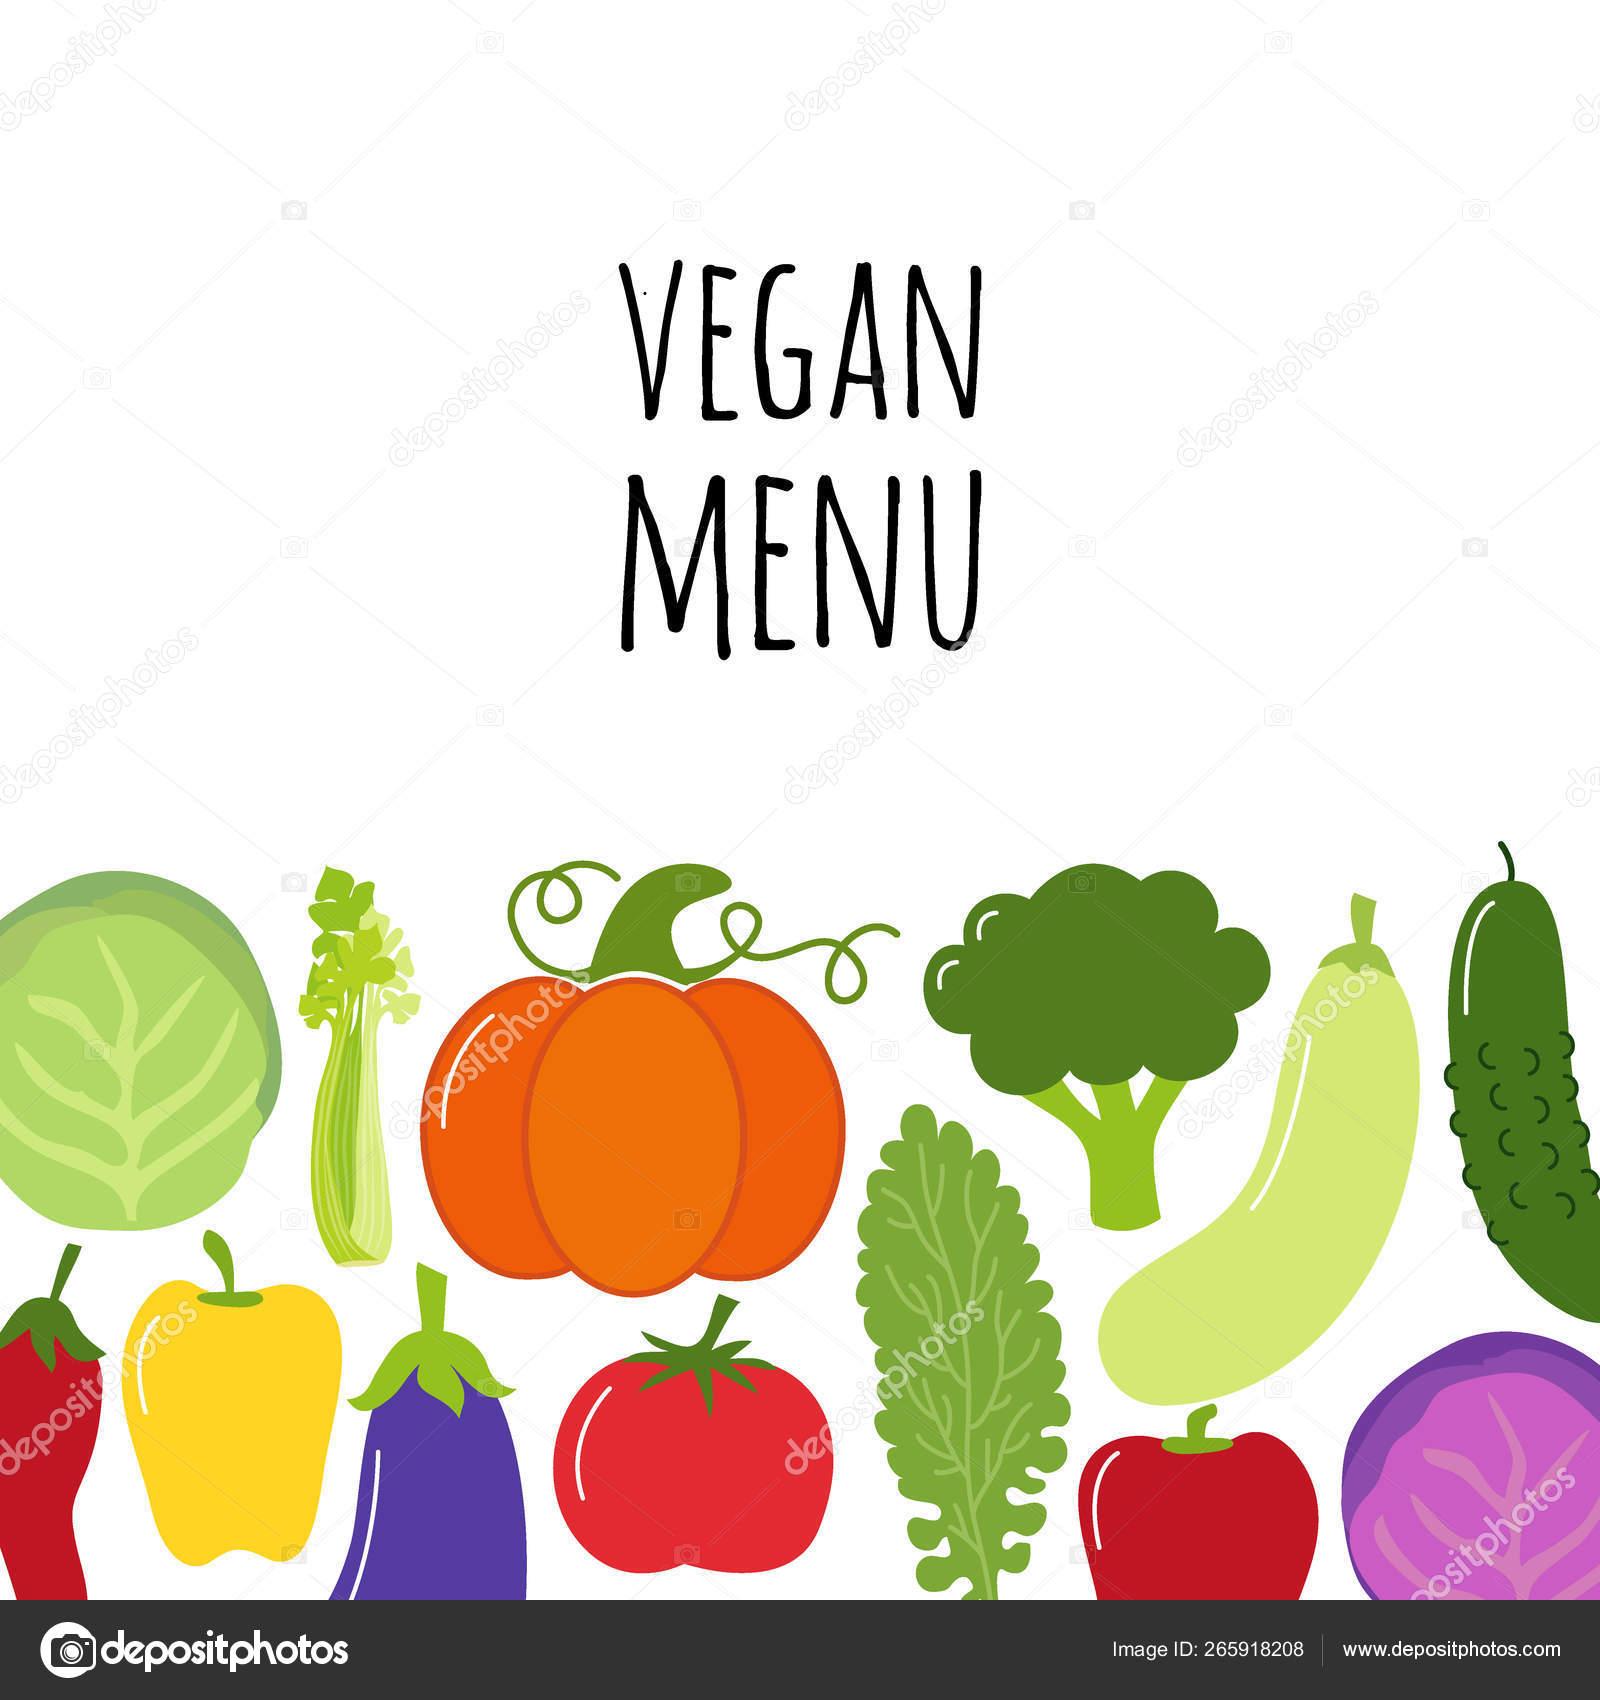 Hình nền menu rau sẽ giúp bạn tận dụng những loại rau tươi ngon trong các món ăn của mình. Tận hưởng rau quả tốt cho sức khỏe với các món ăn hấp dẫn trên menu này. 